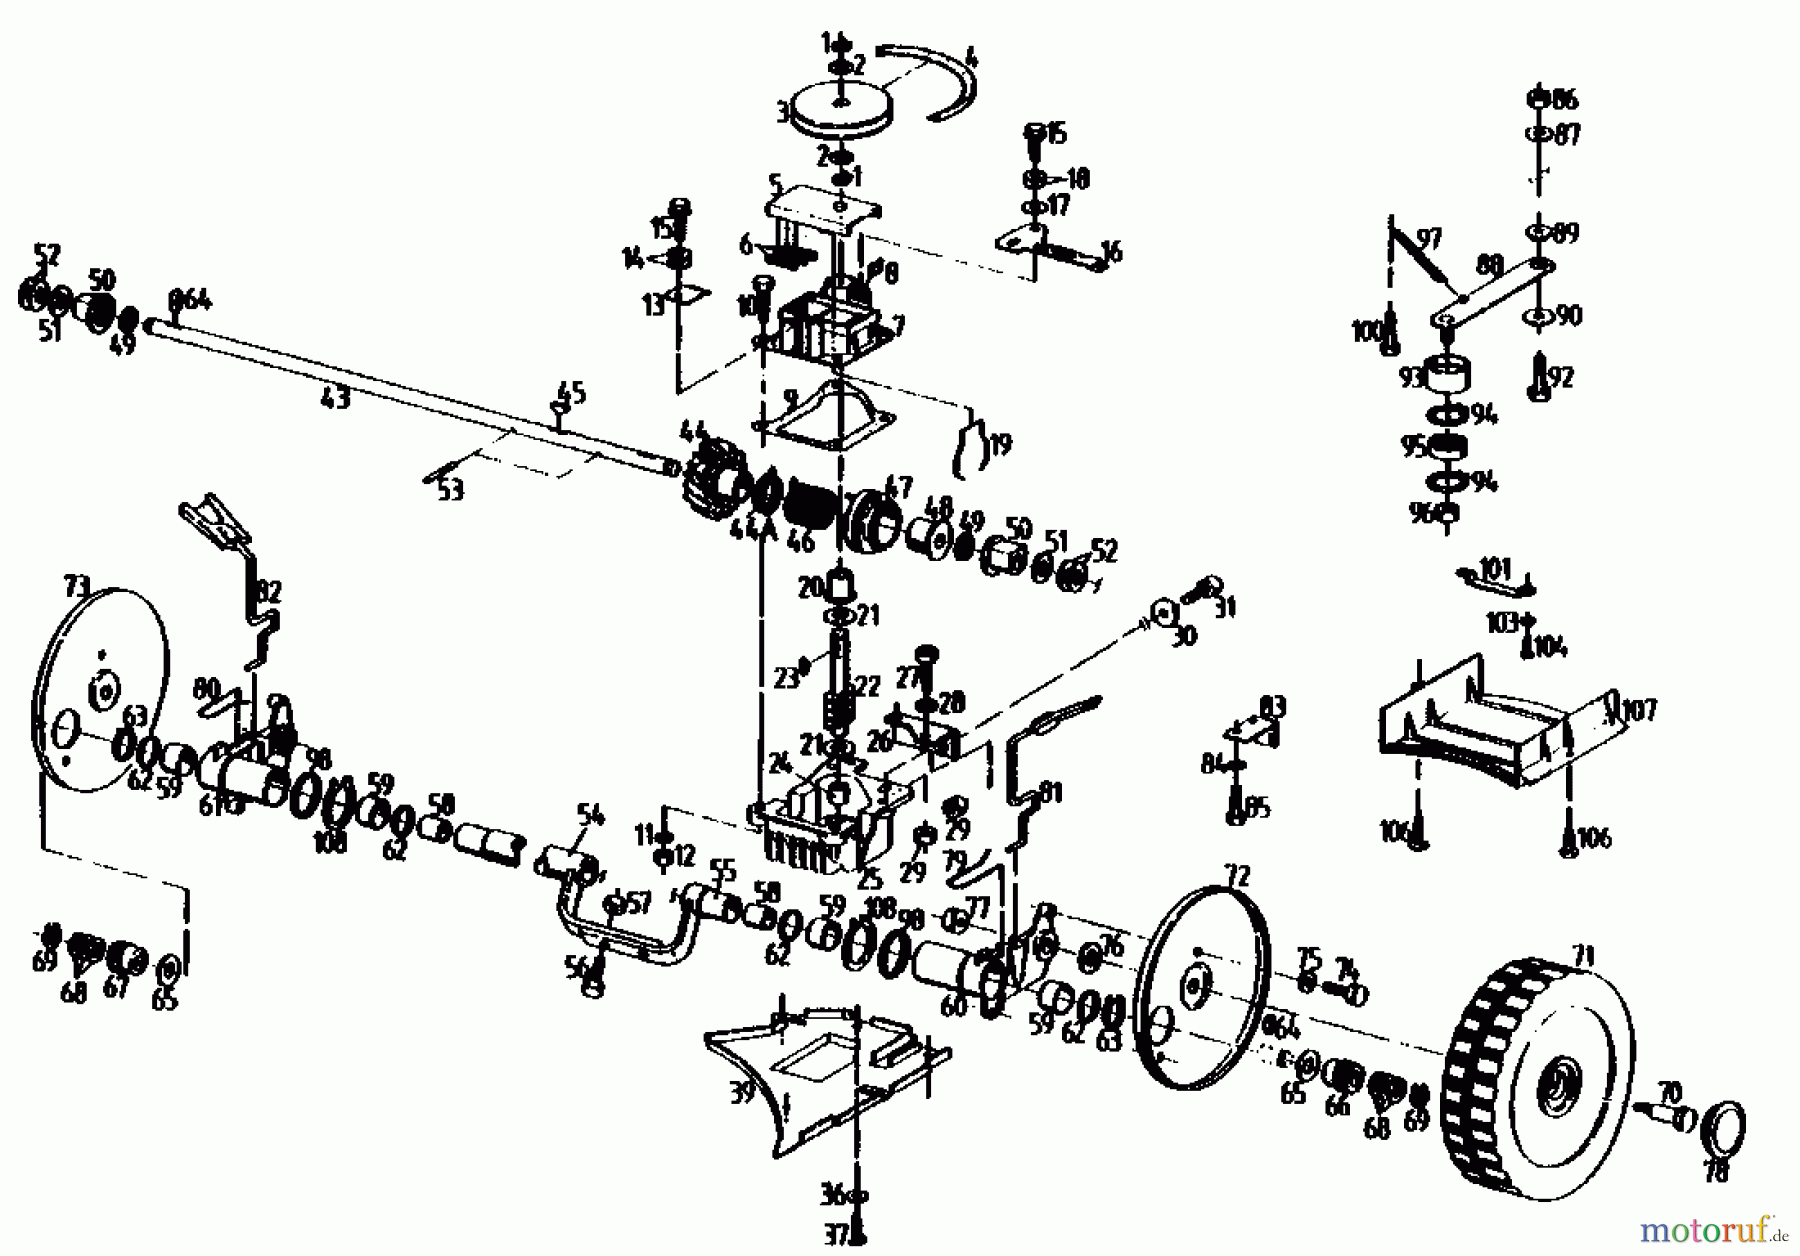  Gutbrod Motormäher mit Antrieb HB 47 R-4 BS 04001.01  (1991) Getriebe